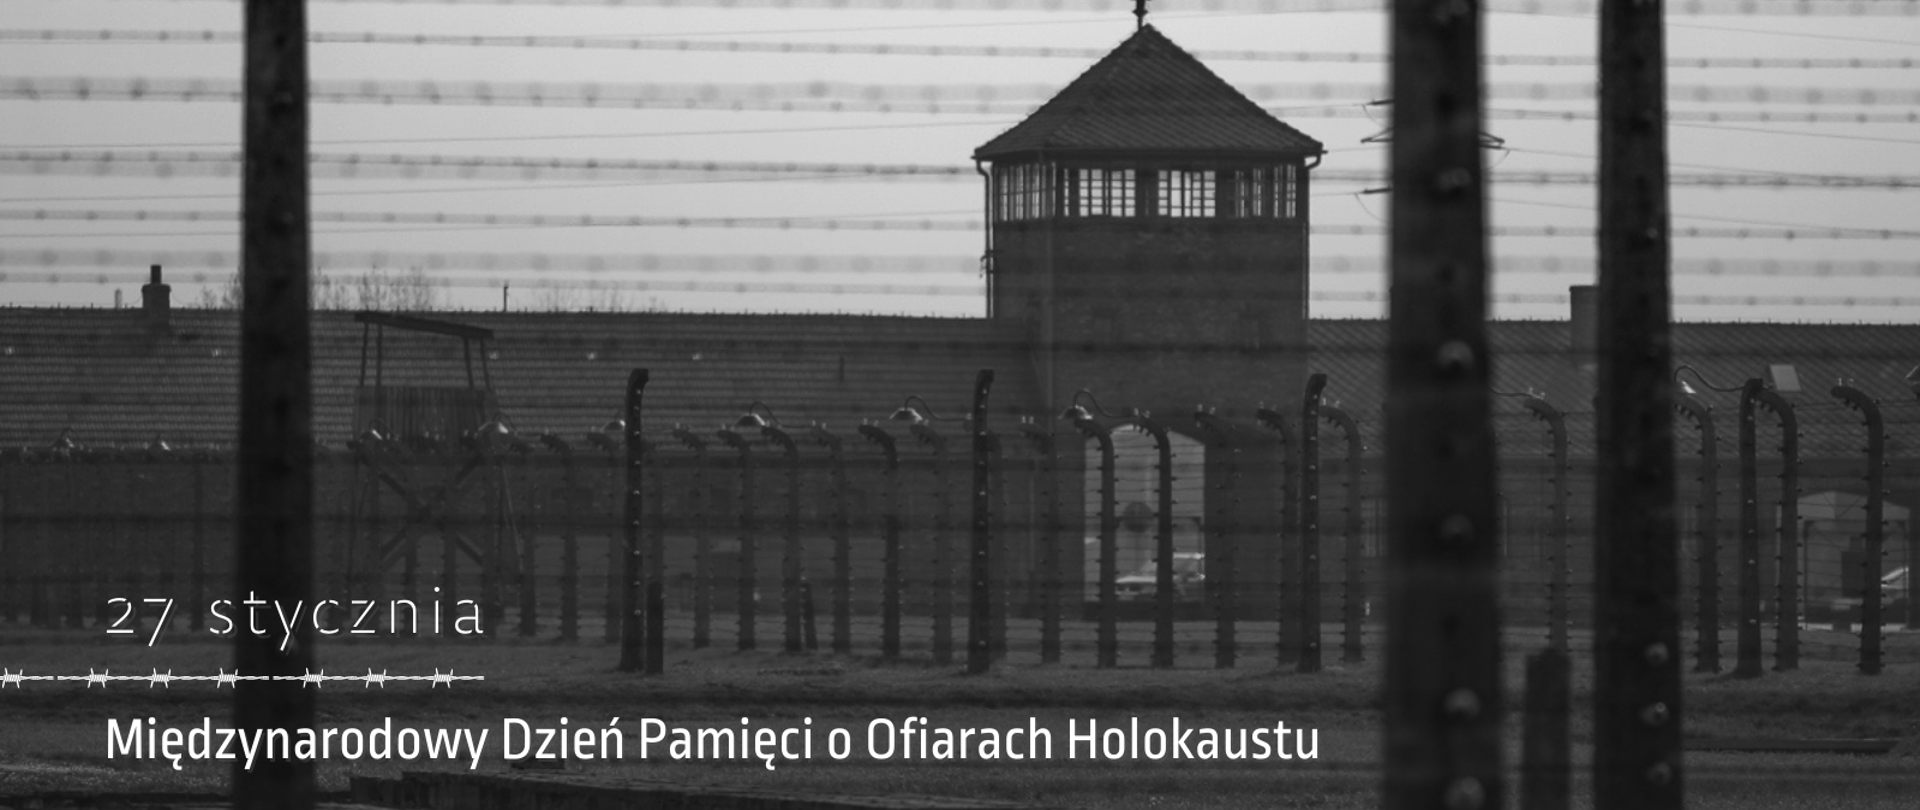 Międzynarodowy Dzień Pamięci o Ofiarach Holocaustu 